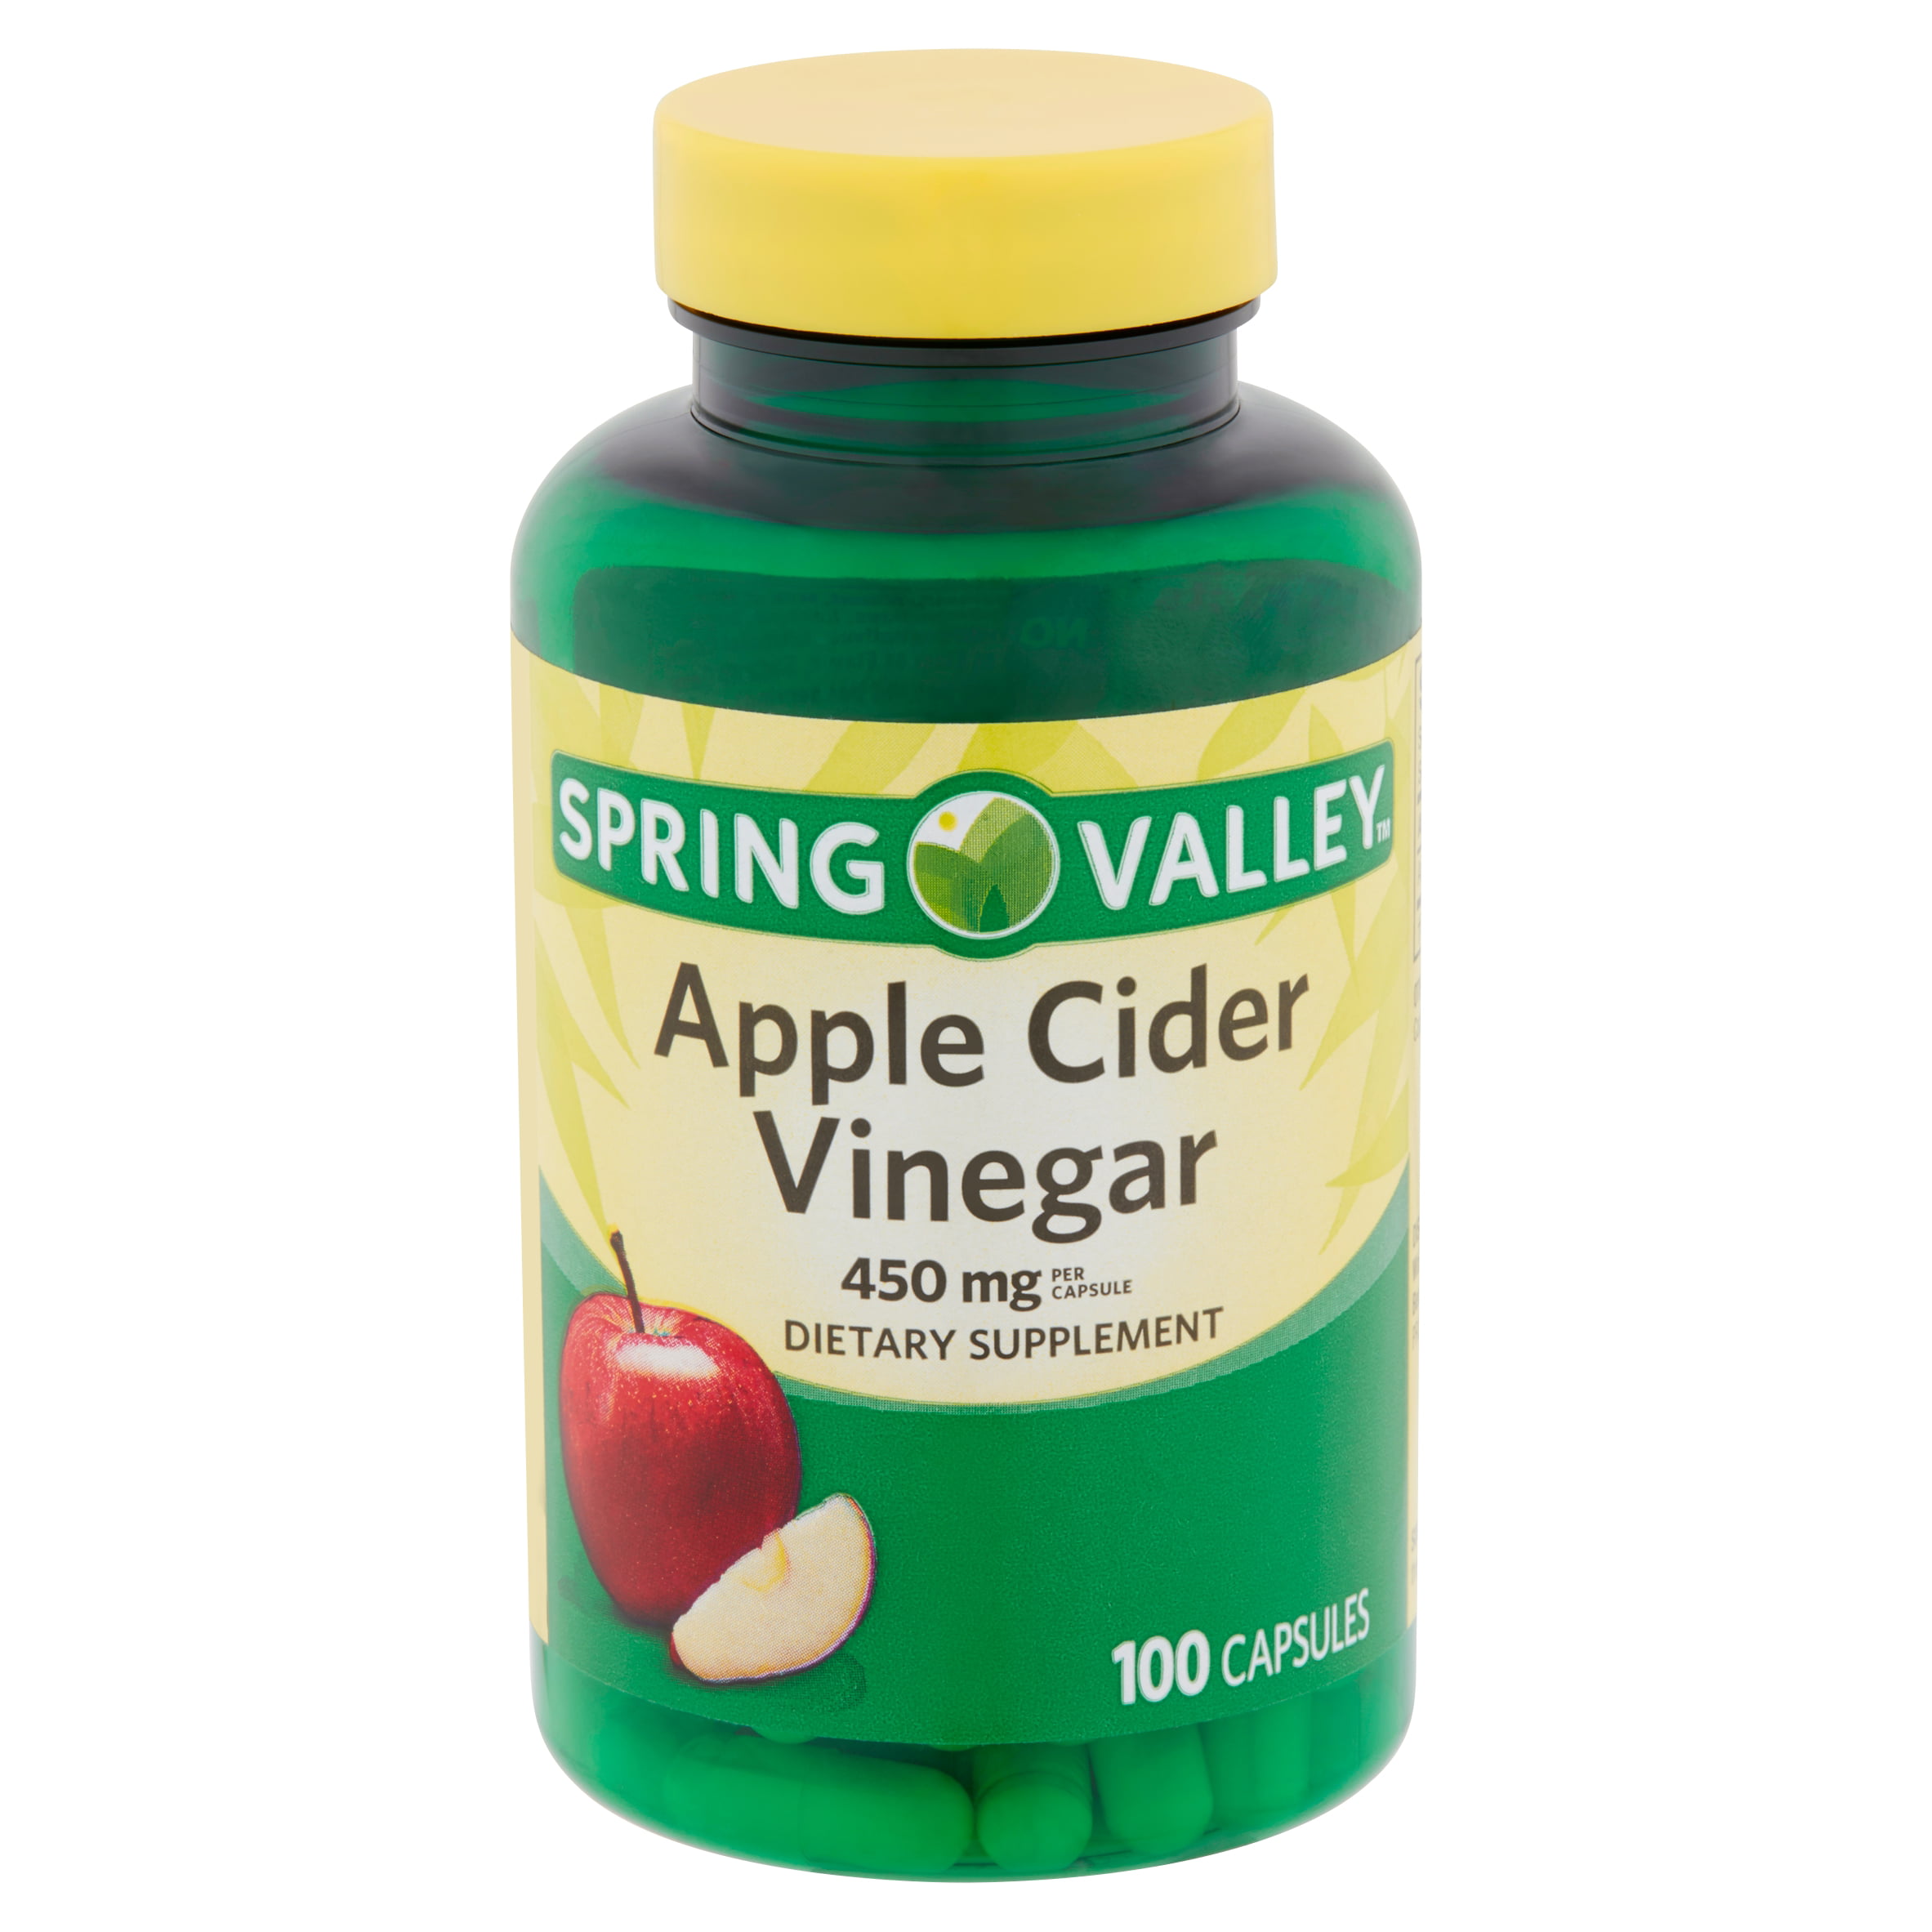 apple cider vinegar tablets for dogs